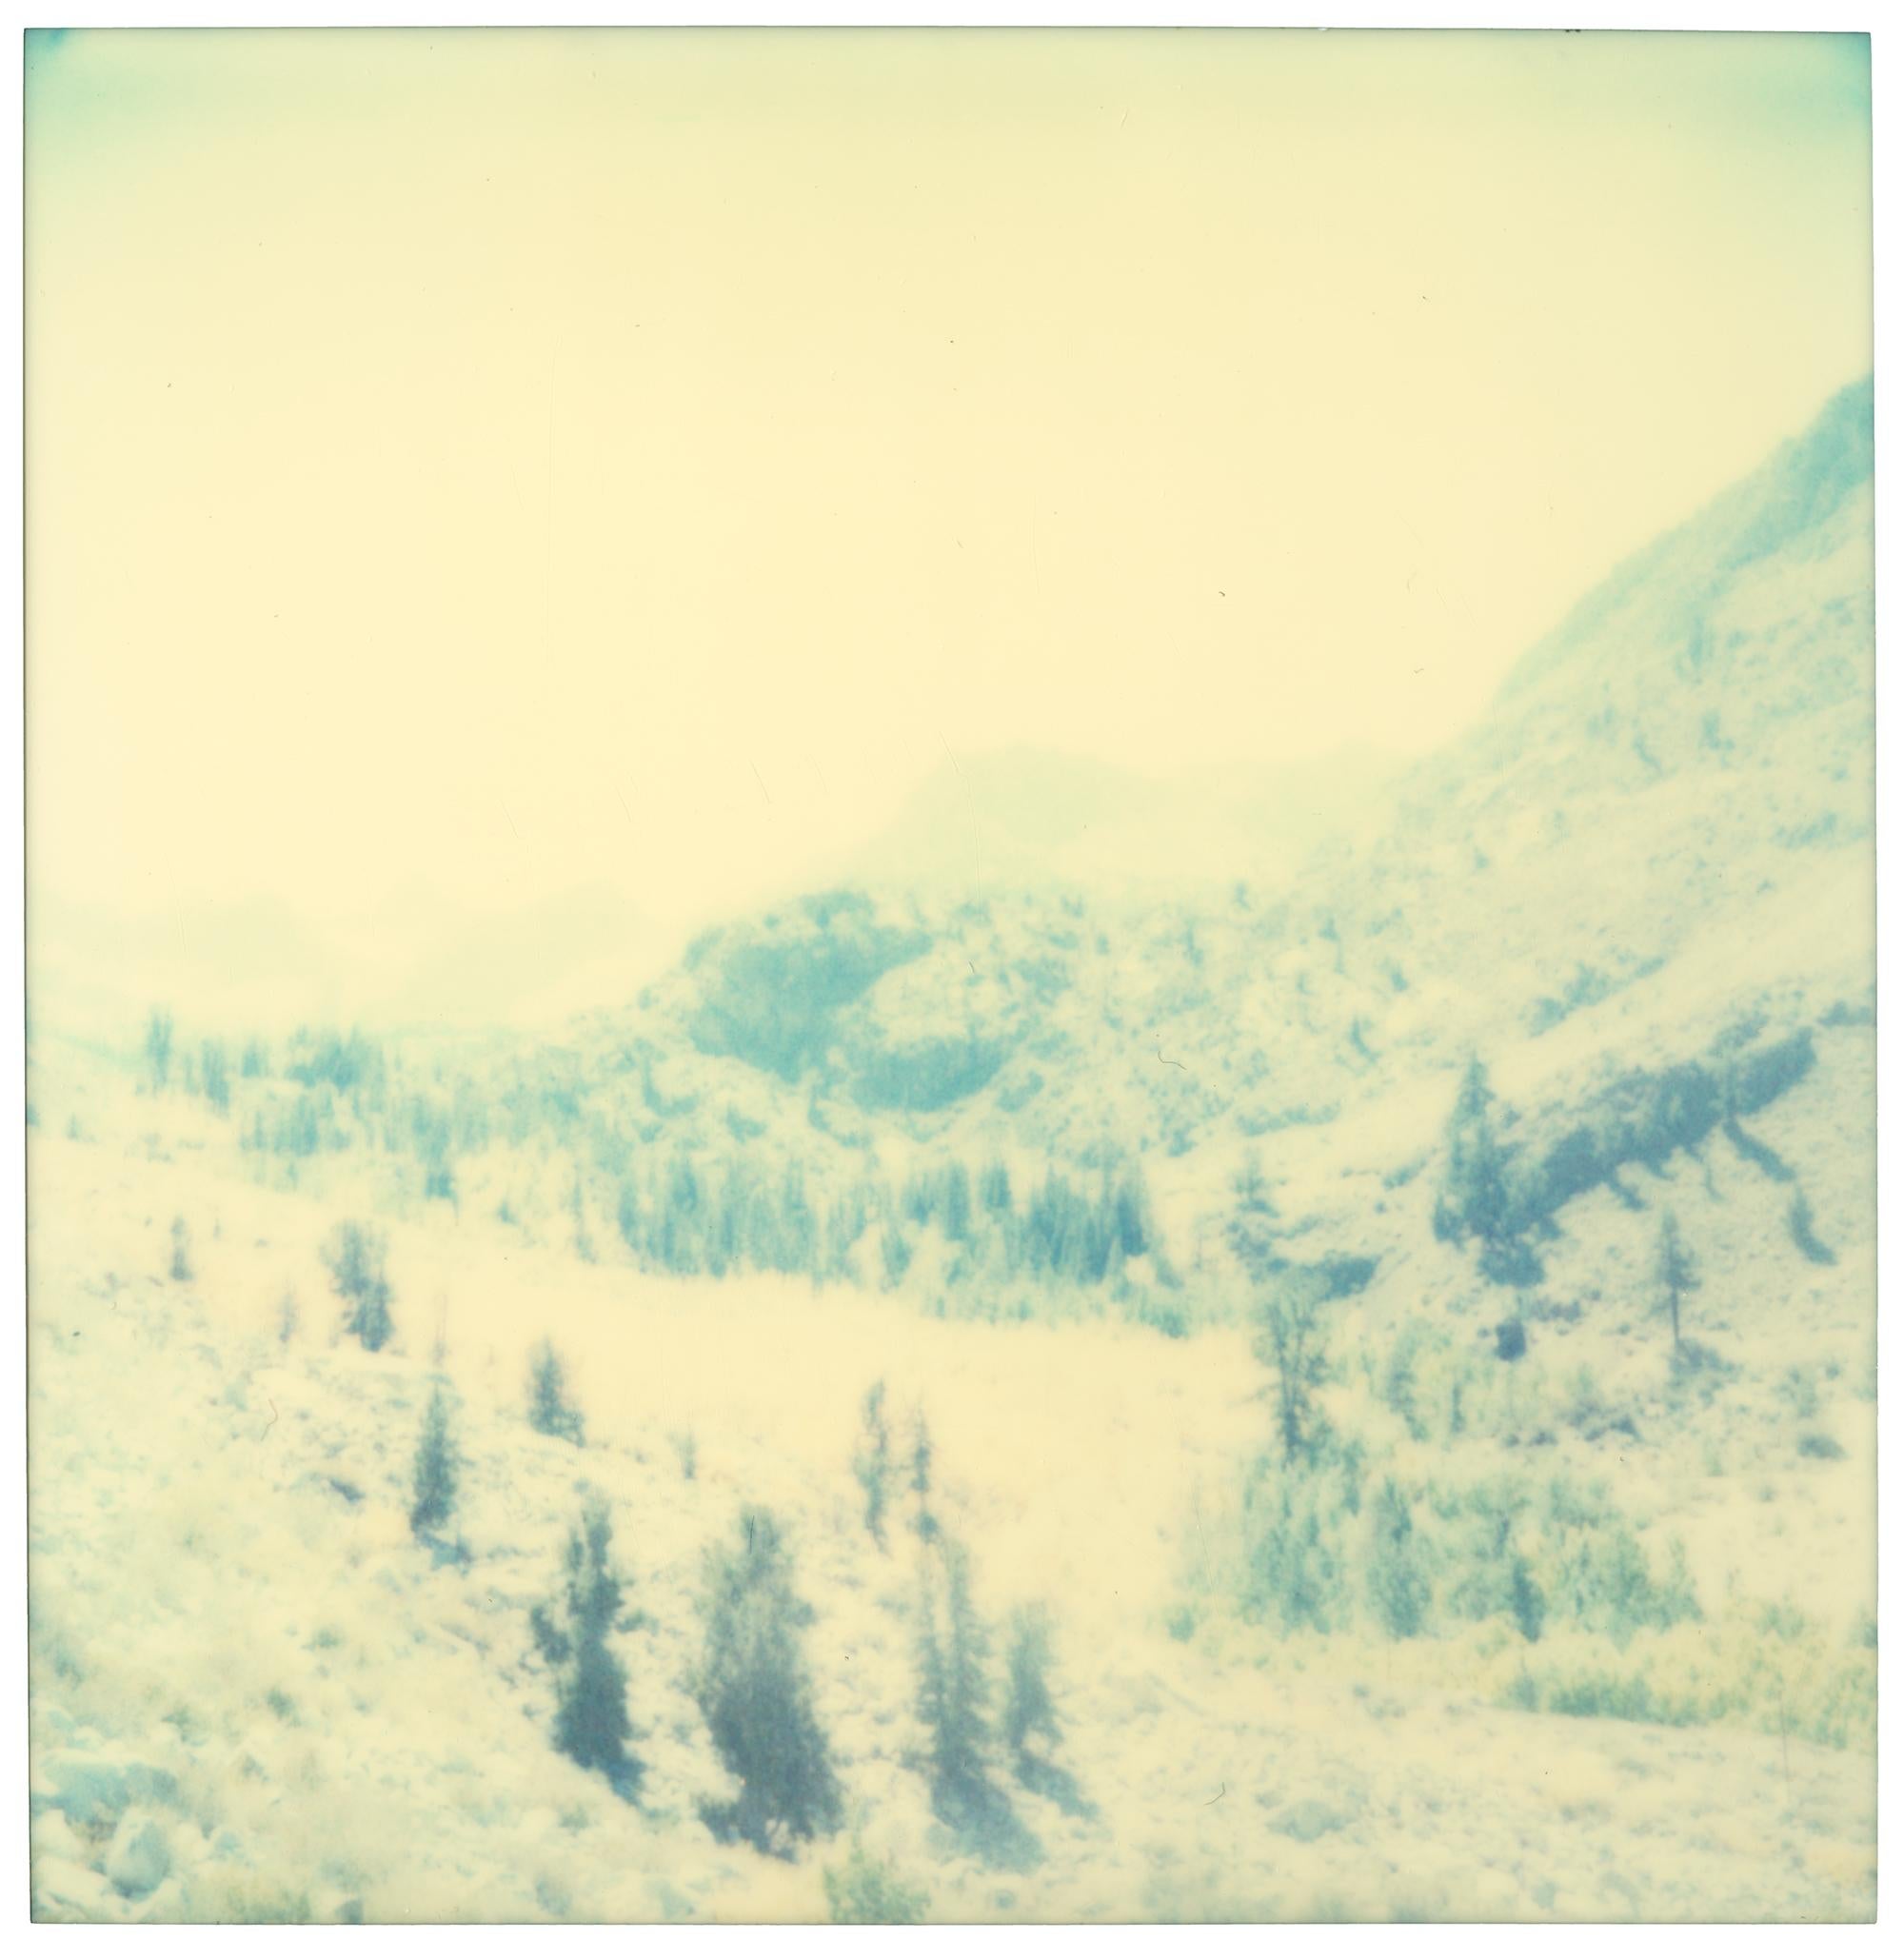 Landscape Photograph Stefanie Schneider - The Valley (Wastelands) - Polaroid, Contemporain, 21e siècle, Couleur, Paysage